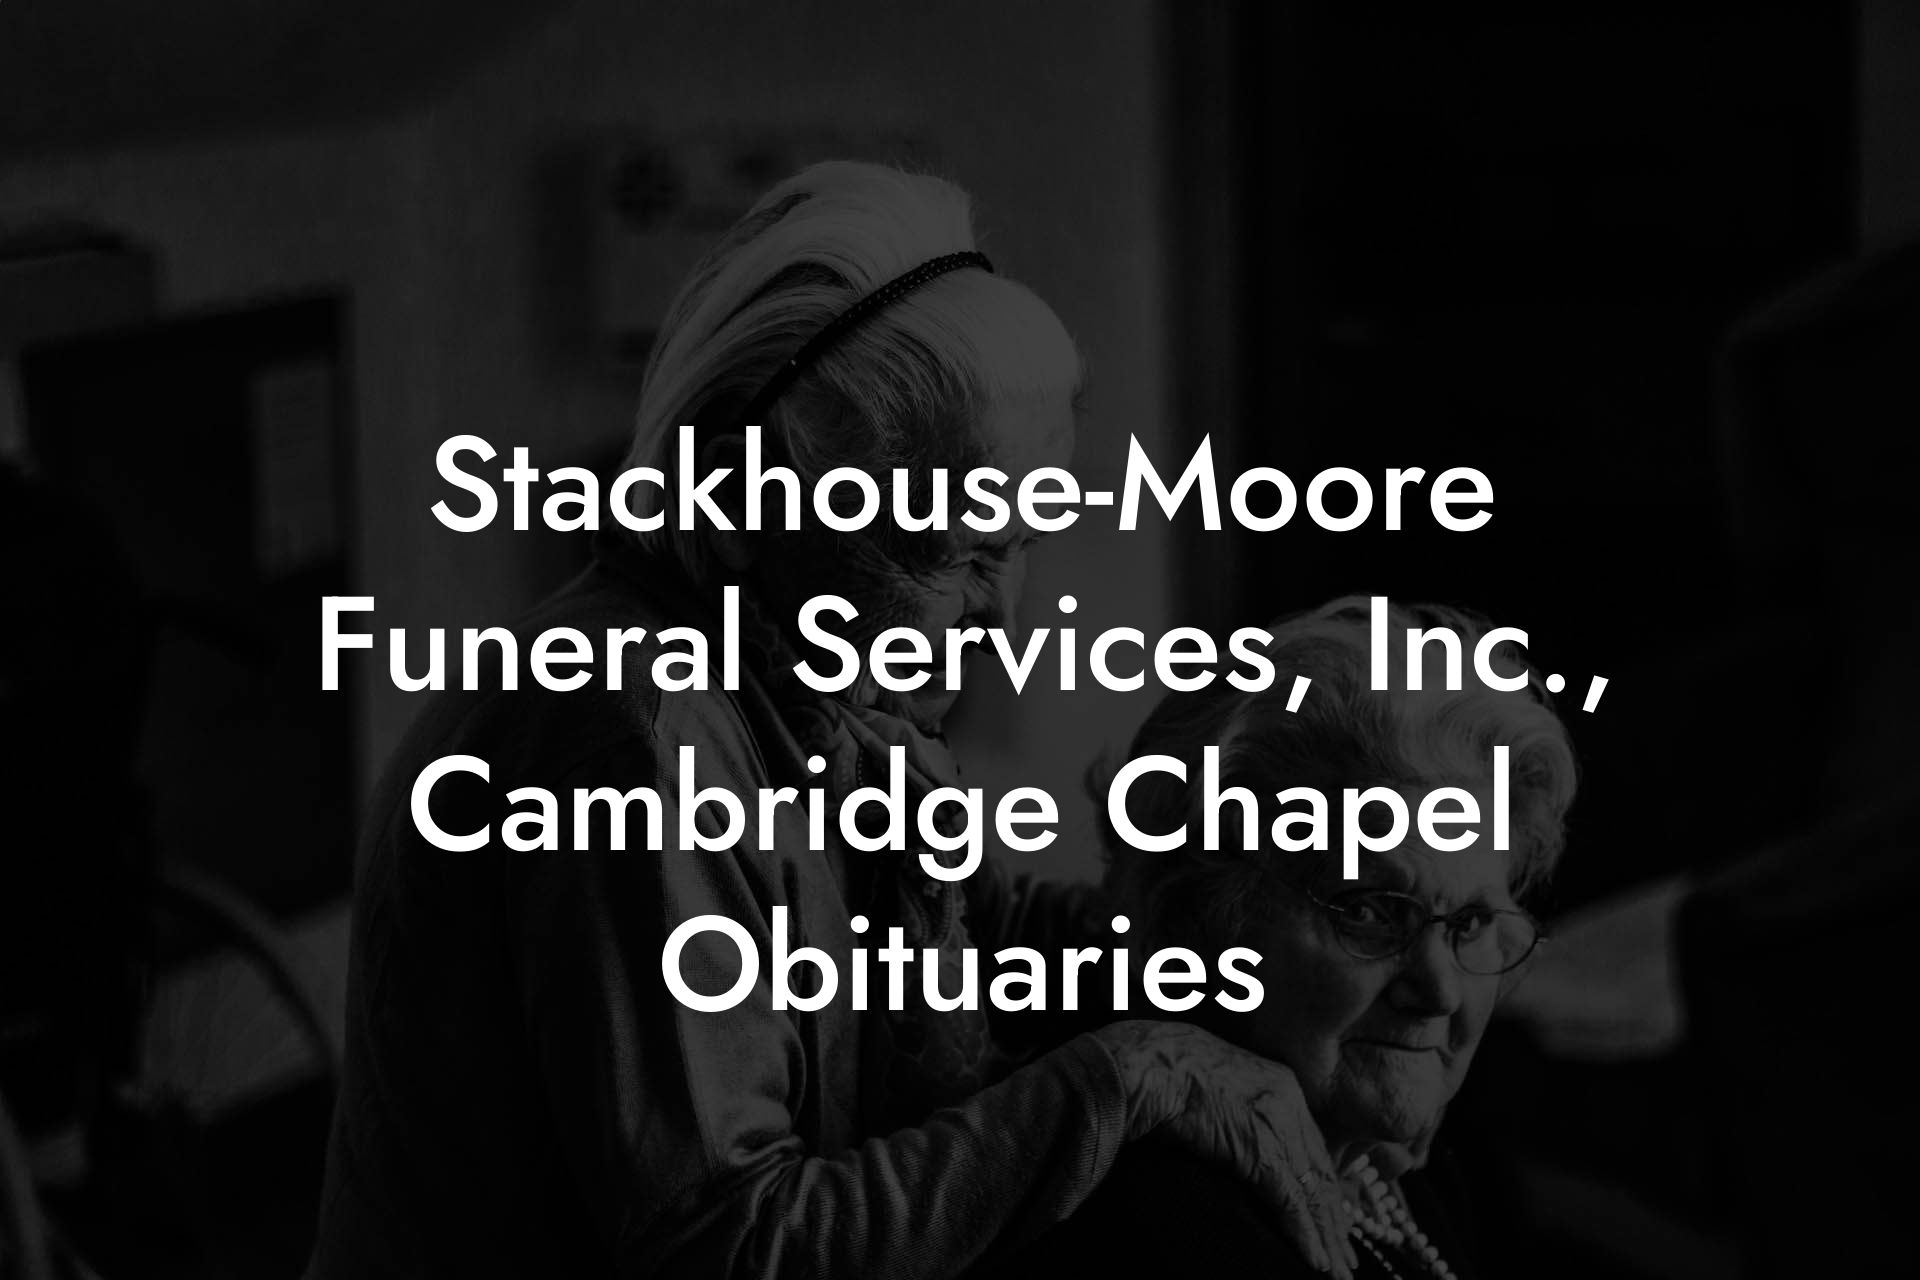 Stackhouse-Moore Funeral Services, Inc., Cambridge Chapel Obituaries